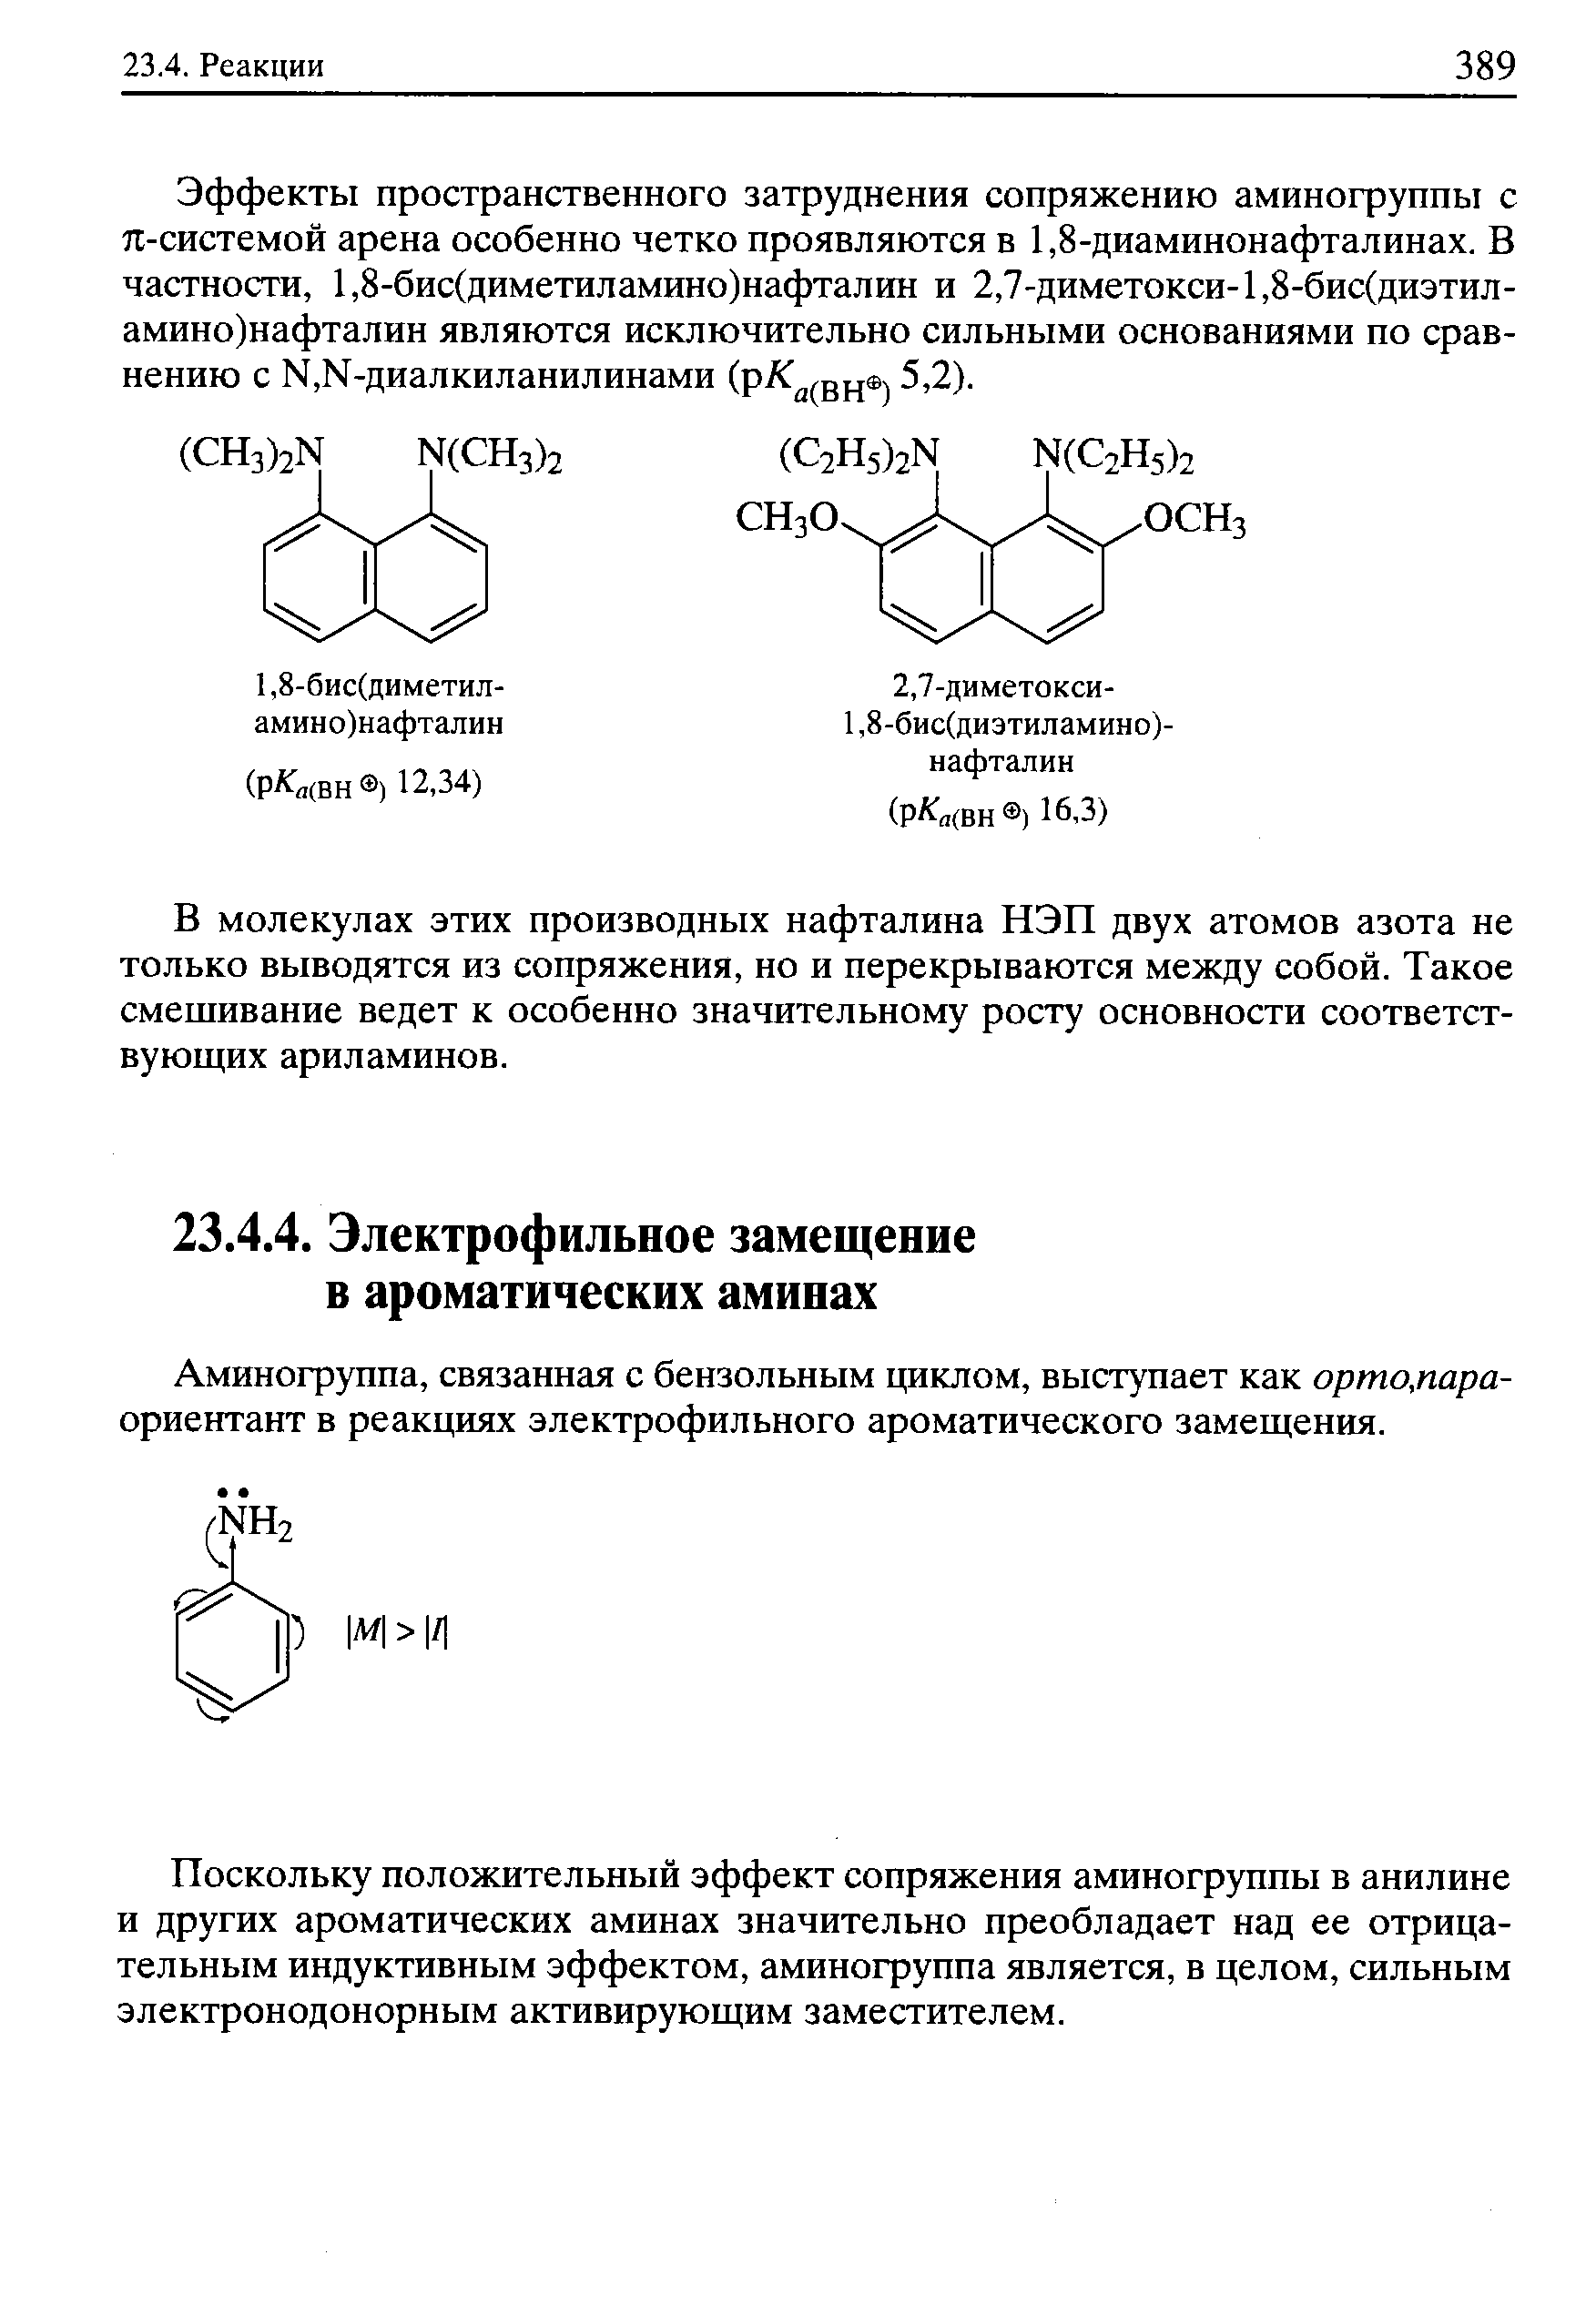 Аминогруппа, связанная с бензольным циклом, выступает как орто,пара-ориентант в реакциях электрофильного ароматического замещения.